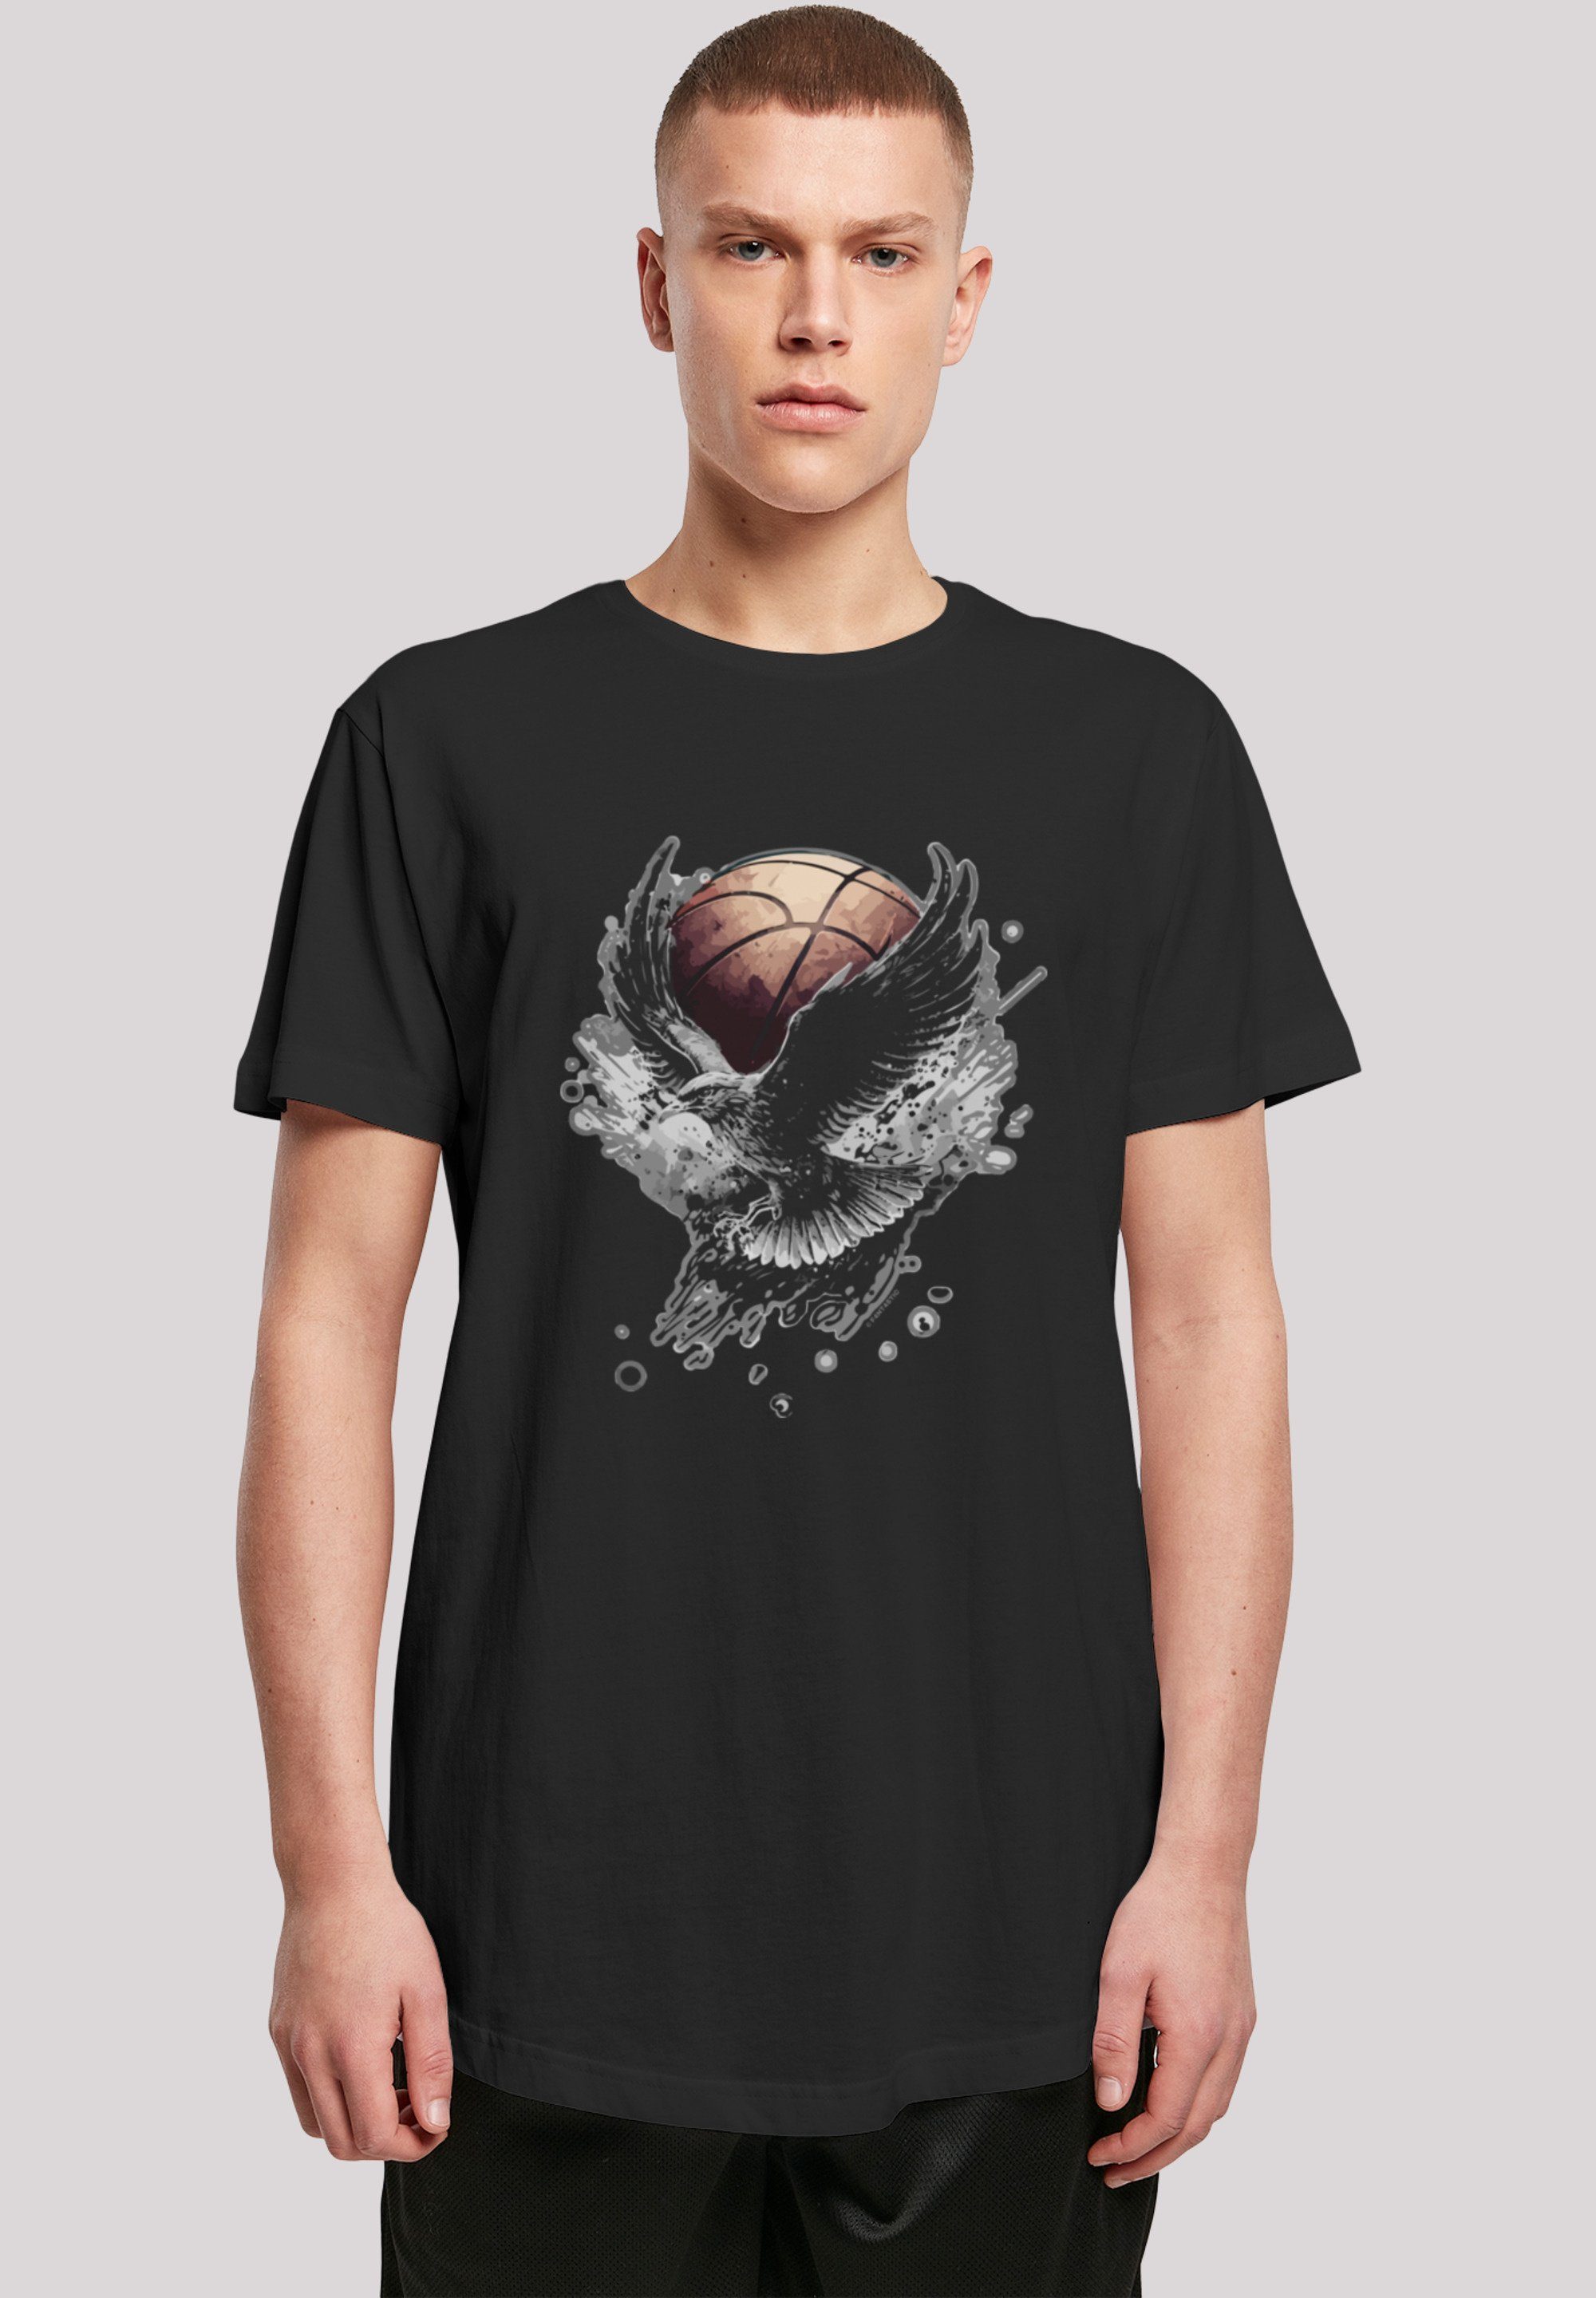 Sehr Print, T-Shirt Basketball Tragekomfort F4NT4STIC hohem weicher mit Baumwollstoff Adler